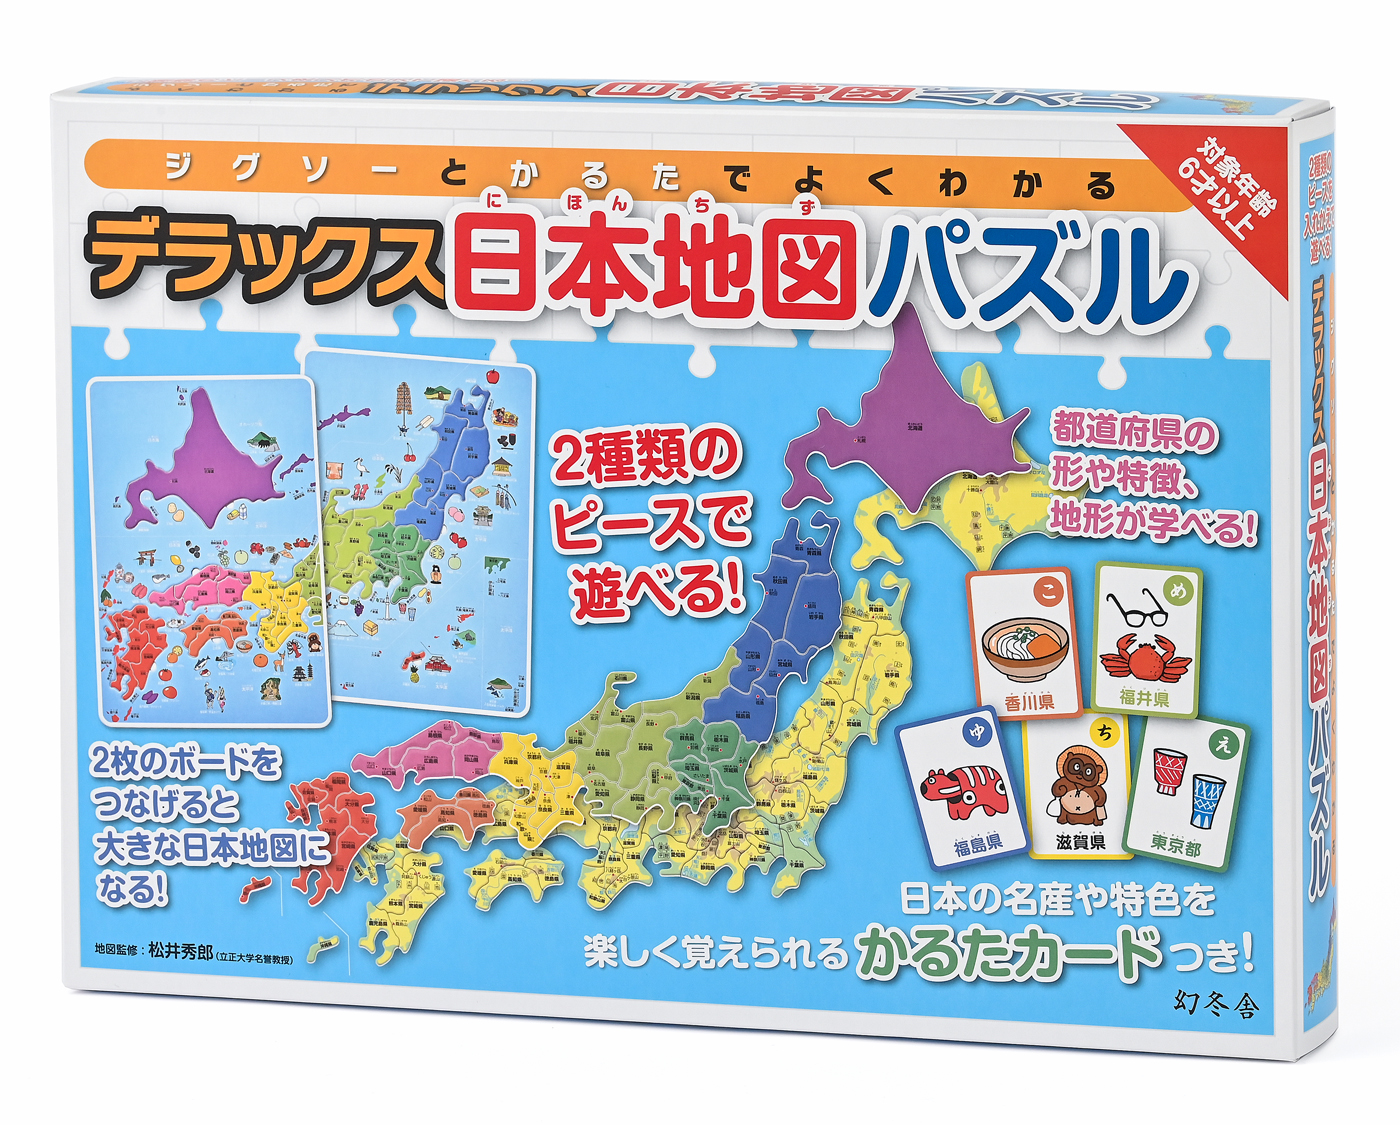 2種類のピースを入れかえて遊べる まったく新しい 日本地図パズル登場 デラックス日本地図パズル 8月31日発売 株式会社幻冬舎のプレスリリース